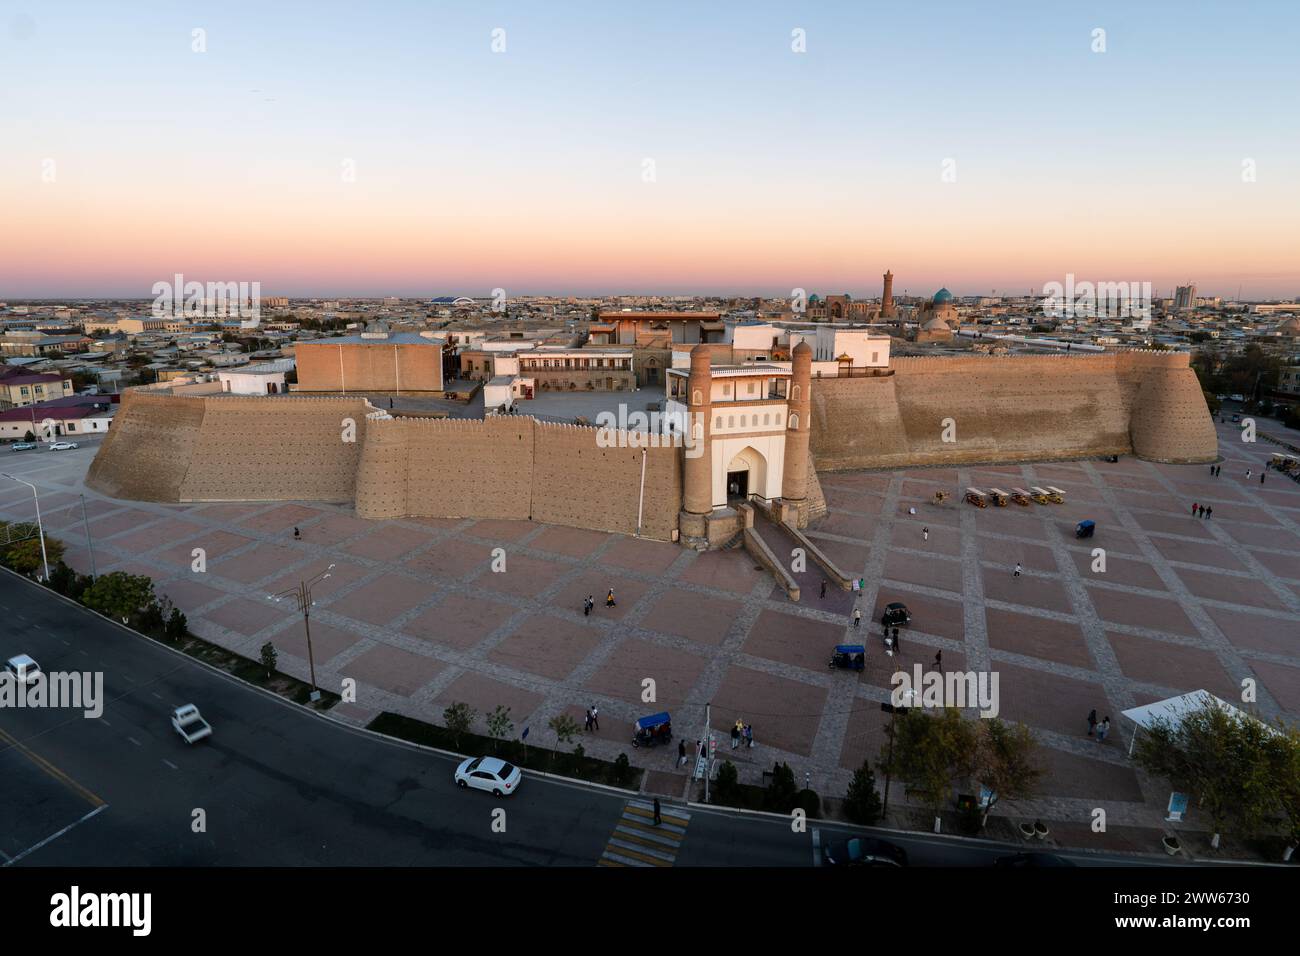 Panorama du centre historique de Boukhara, Ouzbékistan. Premier plan : ancienne forteresse Arche et palais Khan. Contexte : minarets et dômes de b historique Banque D'Images